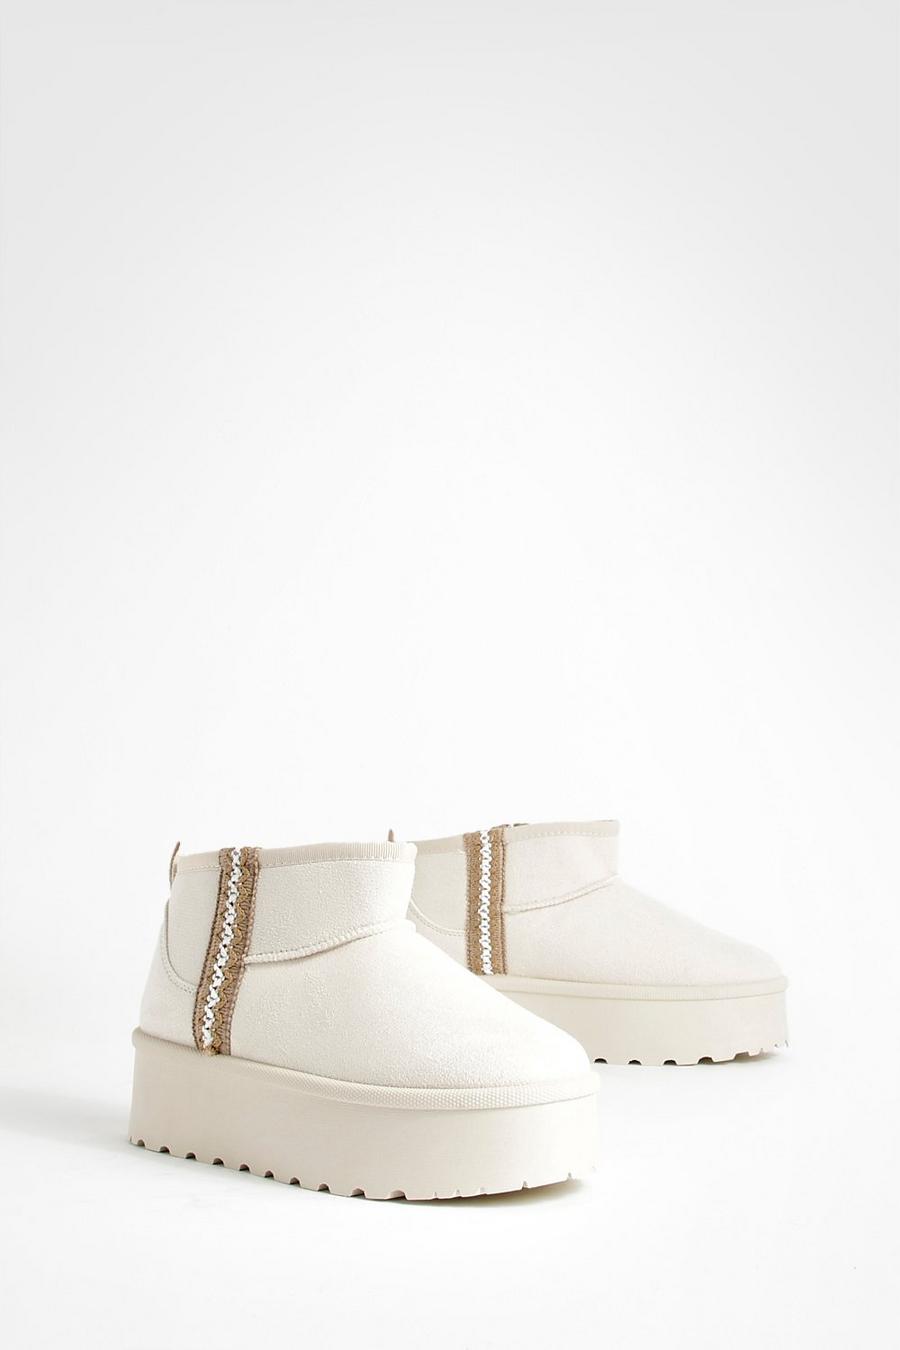 Botas cómodas con plataforma y bordado, Cream